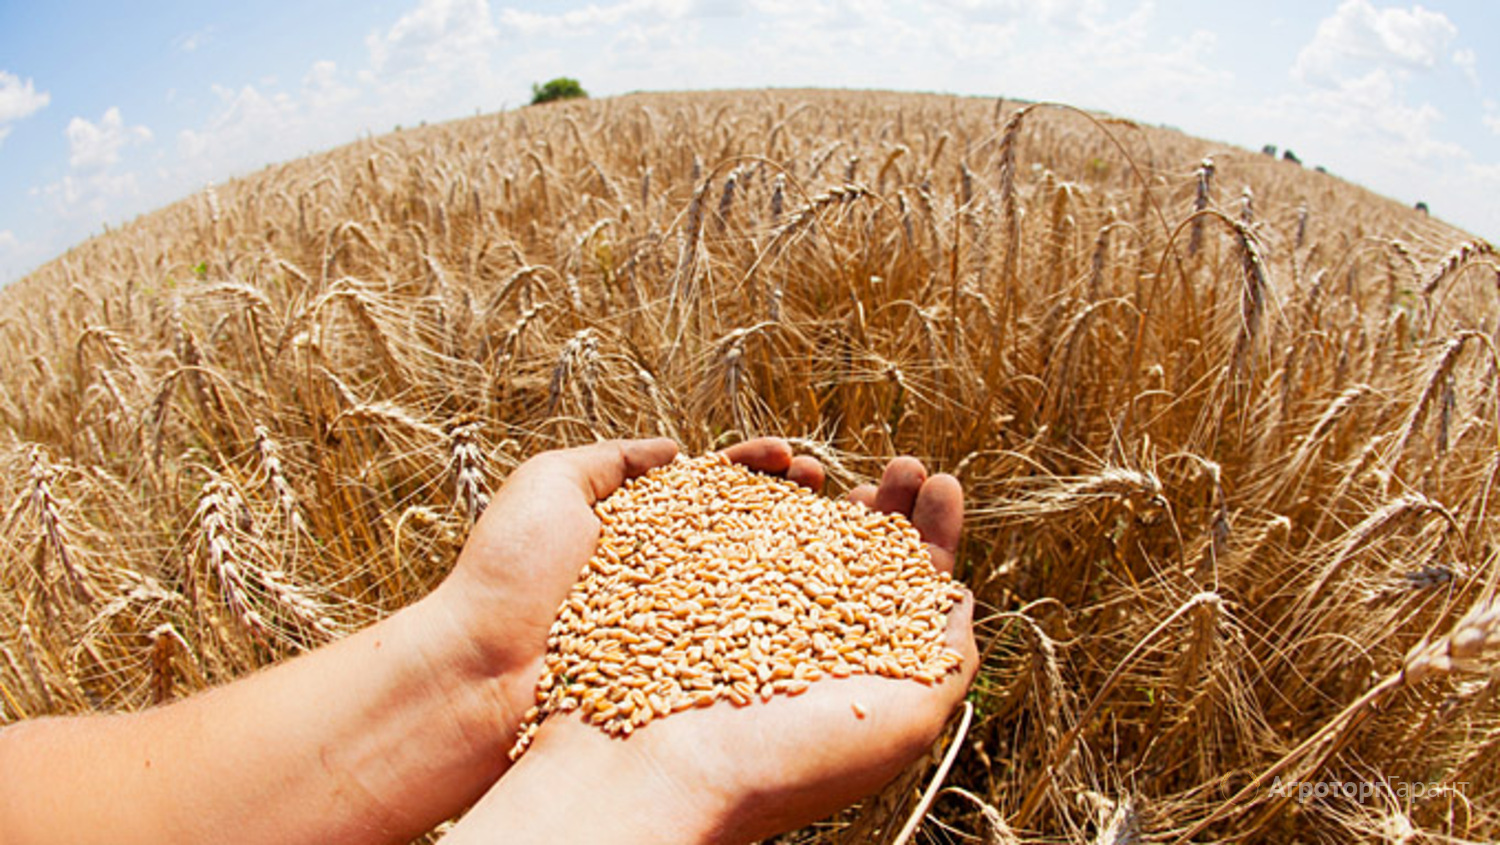 УЗА: Меморандум забезпечує репутацію України як надійного постачальника зерна на світових ринках